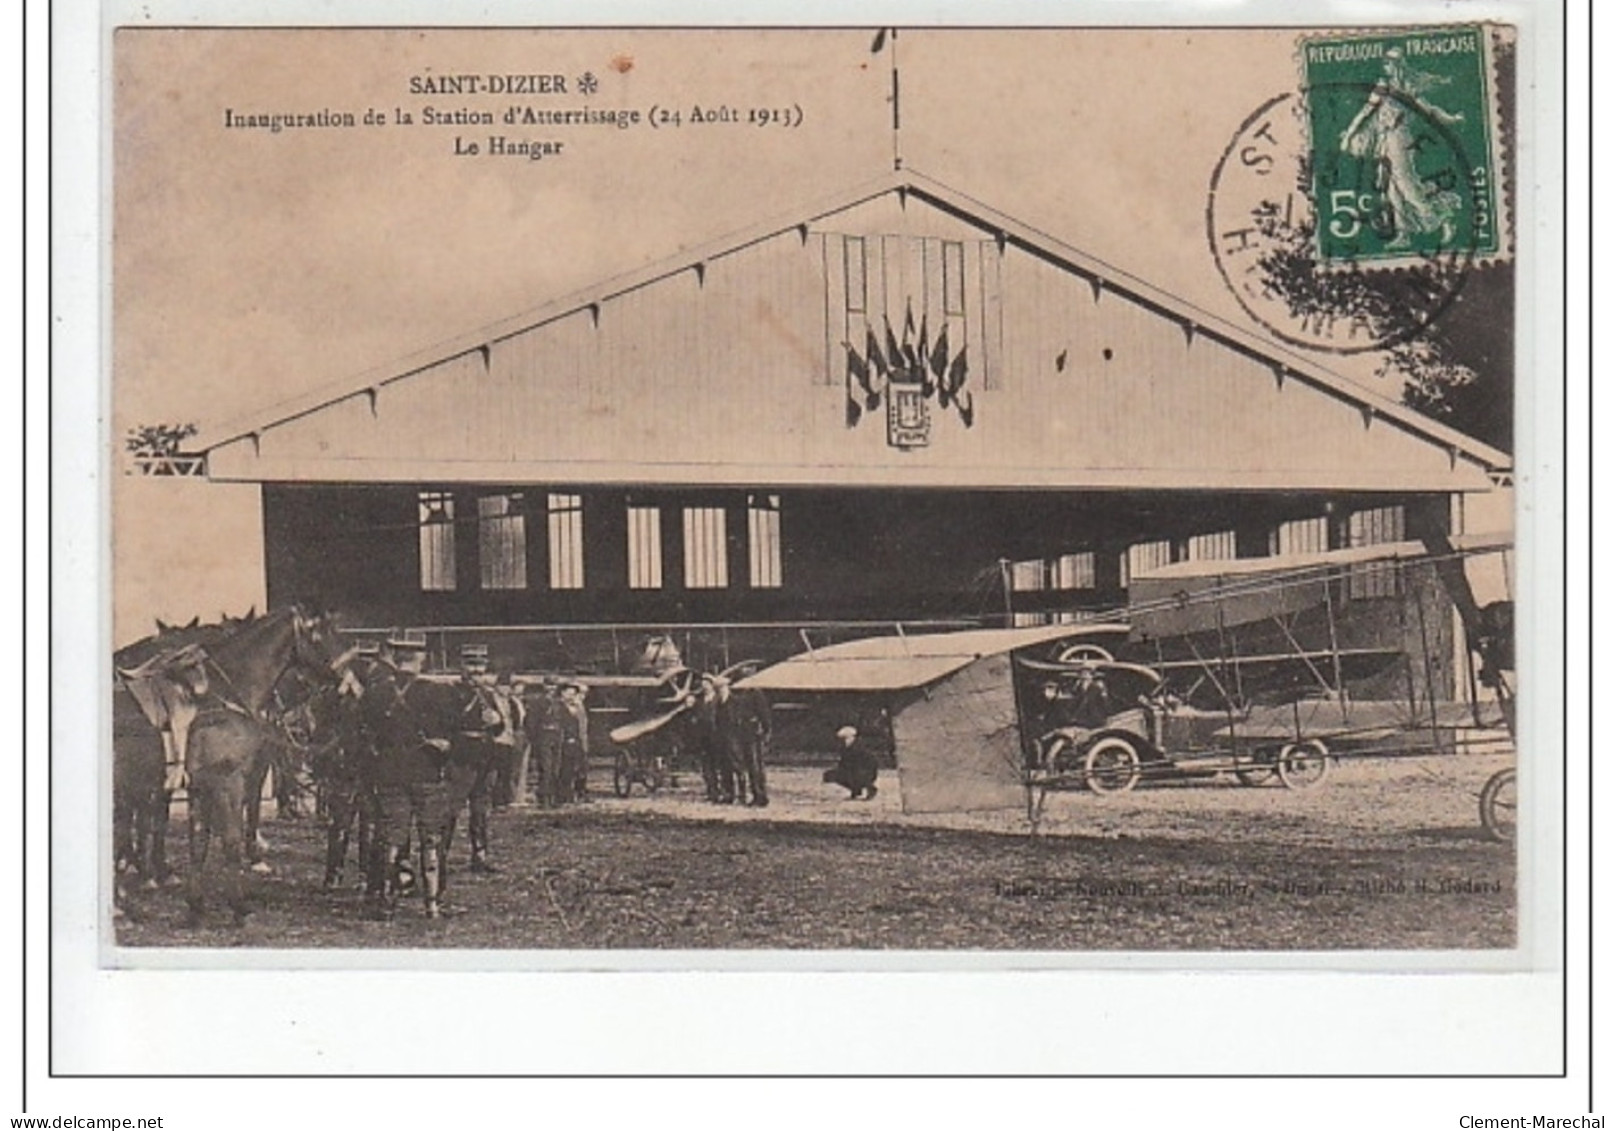 SAINT DIZIER - Inauguration De La Station D'Aterrissage (24 Août 1913) - Le Hangar - Très Bon état - Saint Dizier